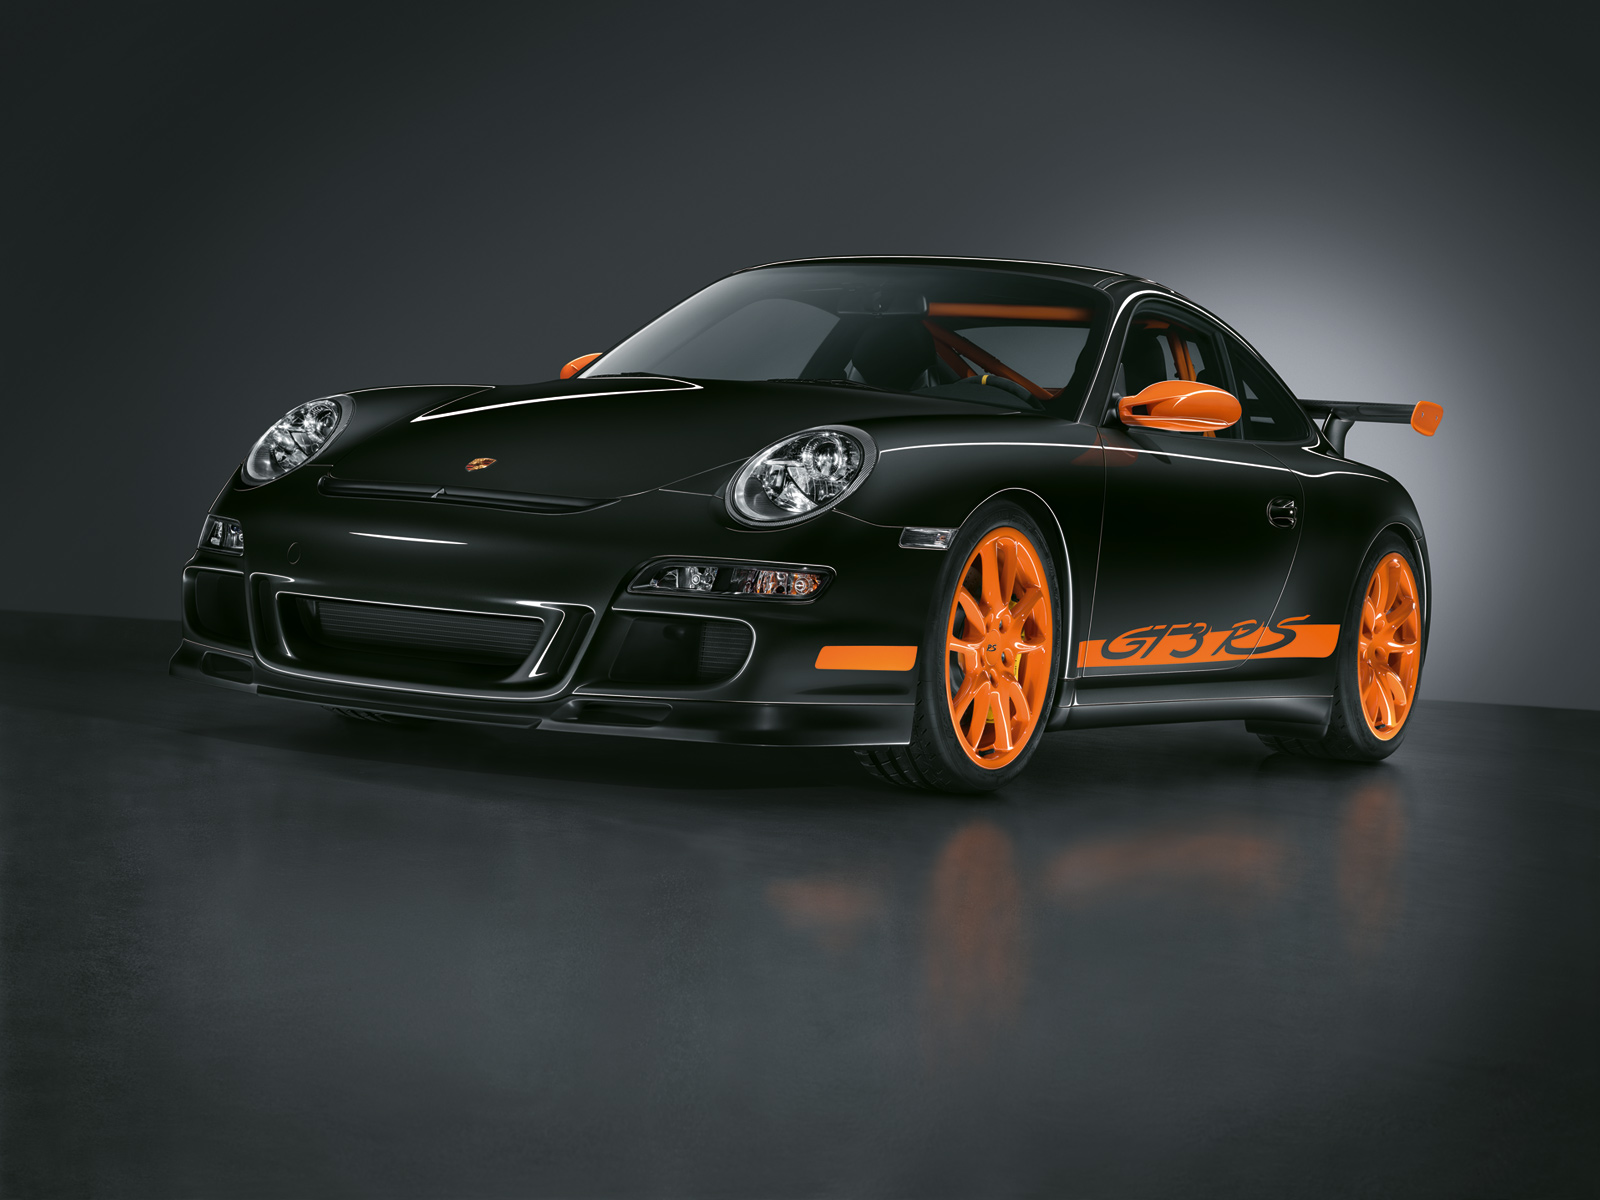 Free Porsche 911 Wallpaper - 2009 Porsche 911 Gt3 Rs , HD Wallpaper & Backgrounds